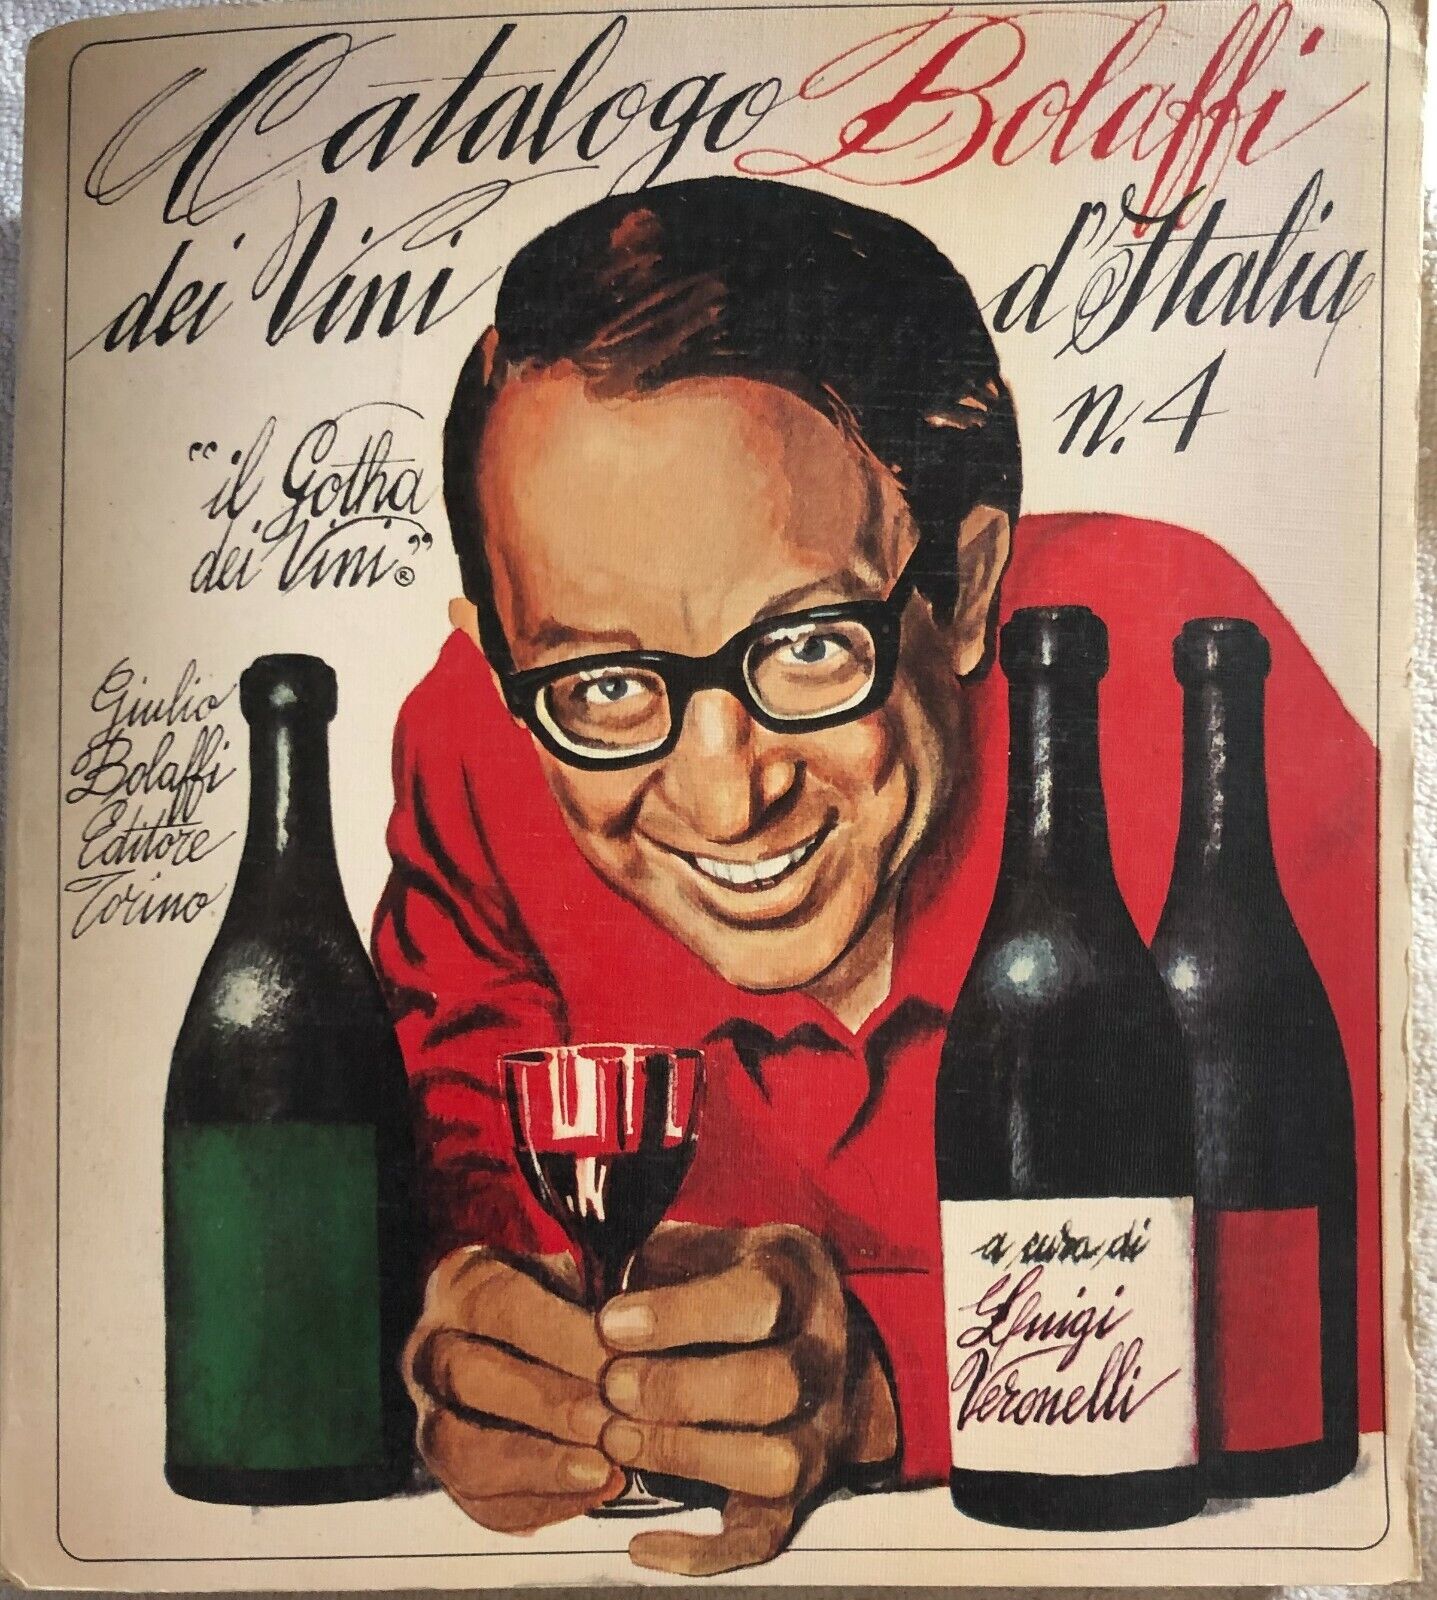 Catalogo dei vini d'Italia n. 4 di Luigi Veronelli,  1976,  Bolaffi